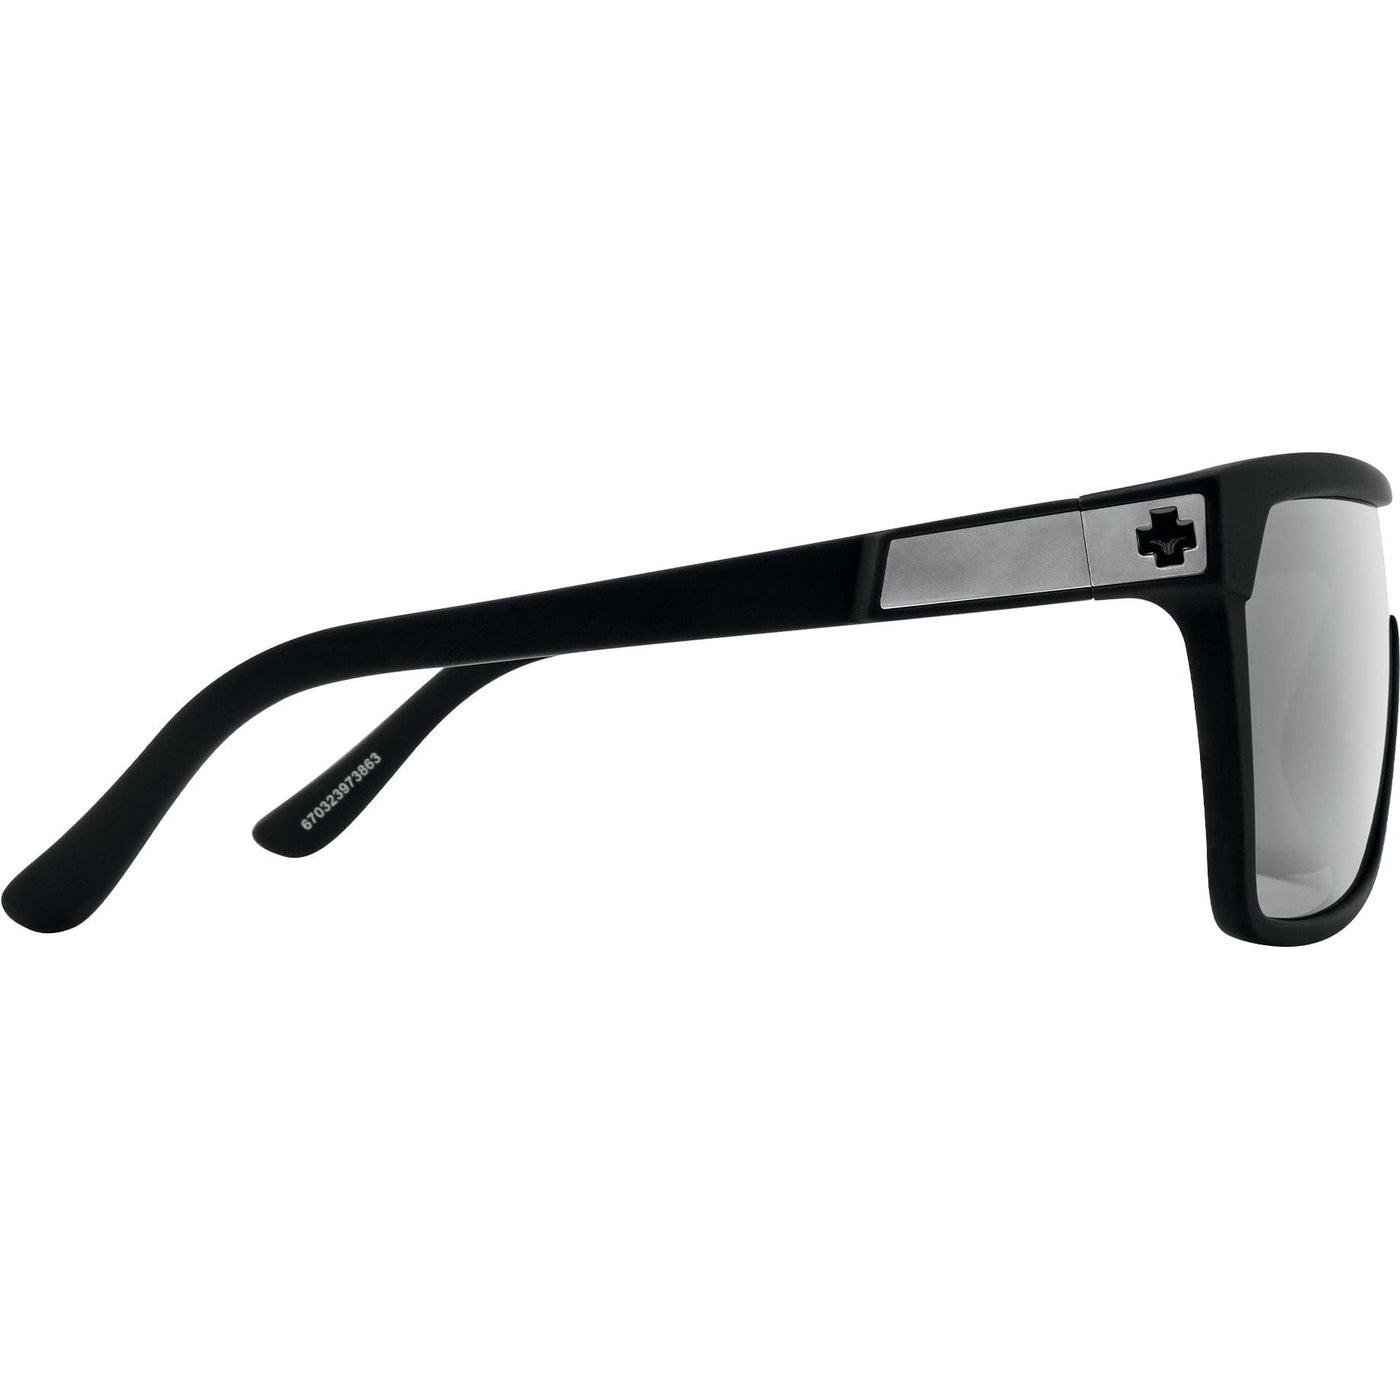 goggle style sunglasses - silver